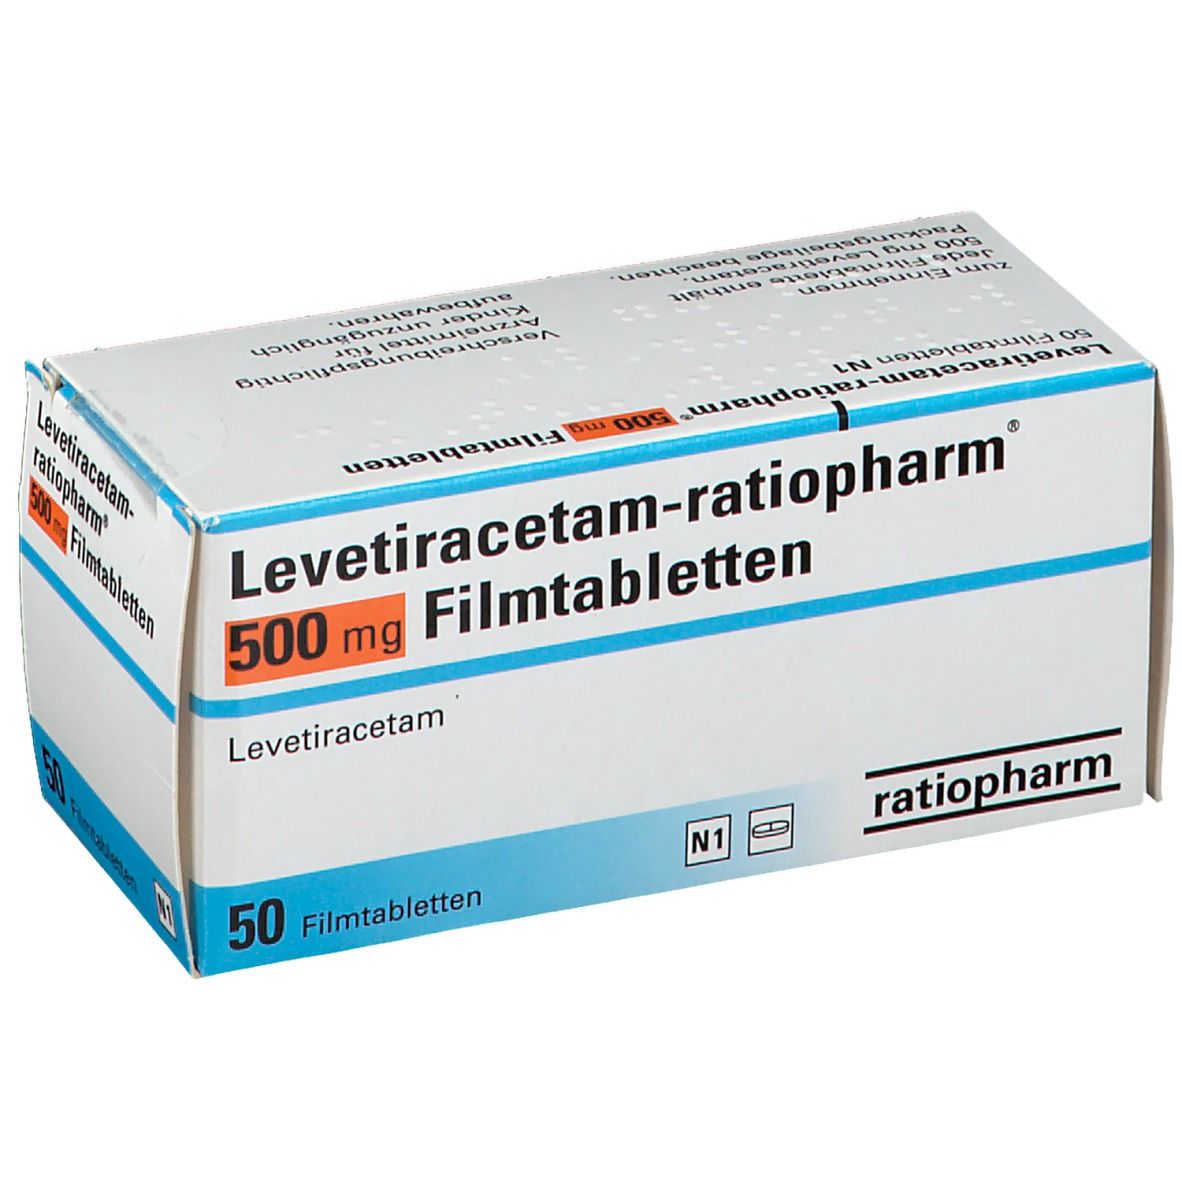 Levetiracetam-ratiopharm® 500 mg